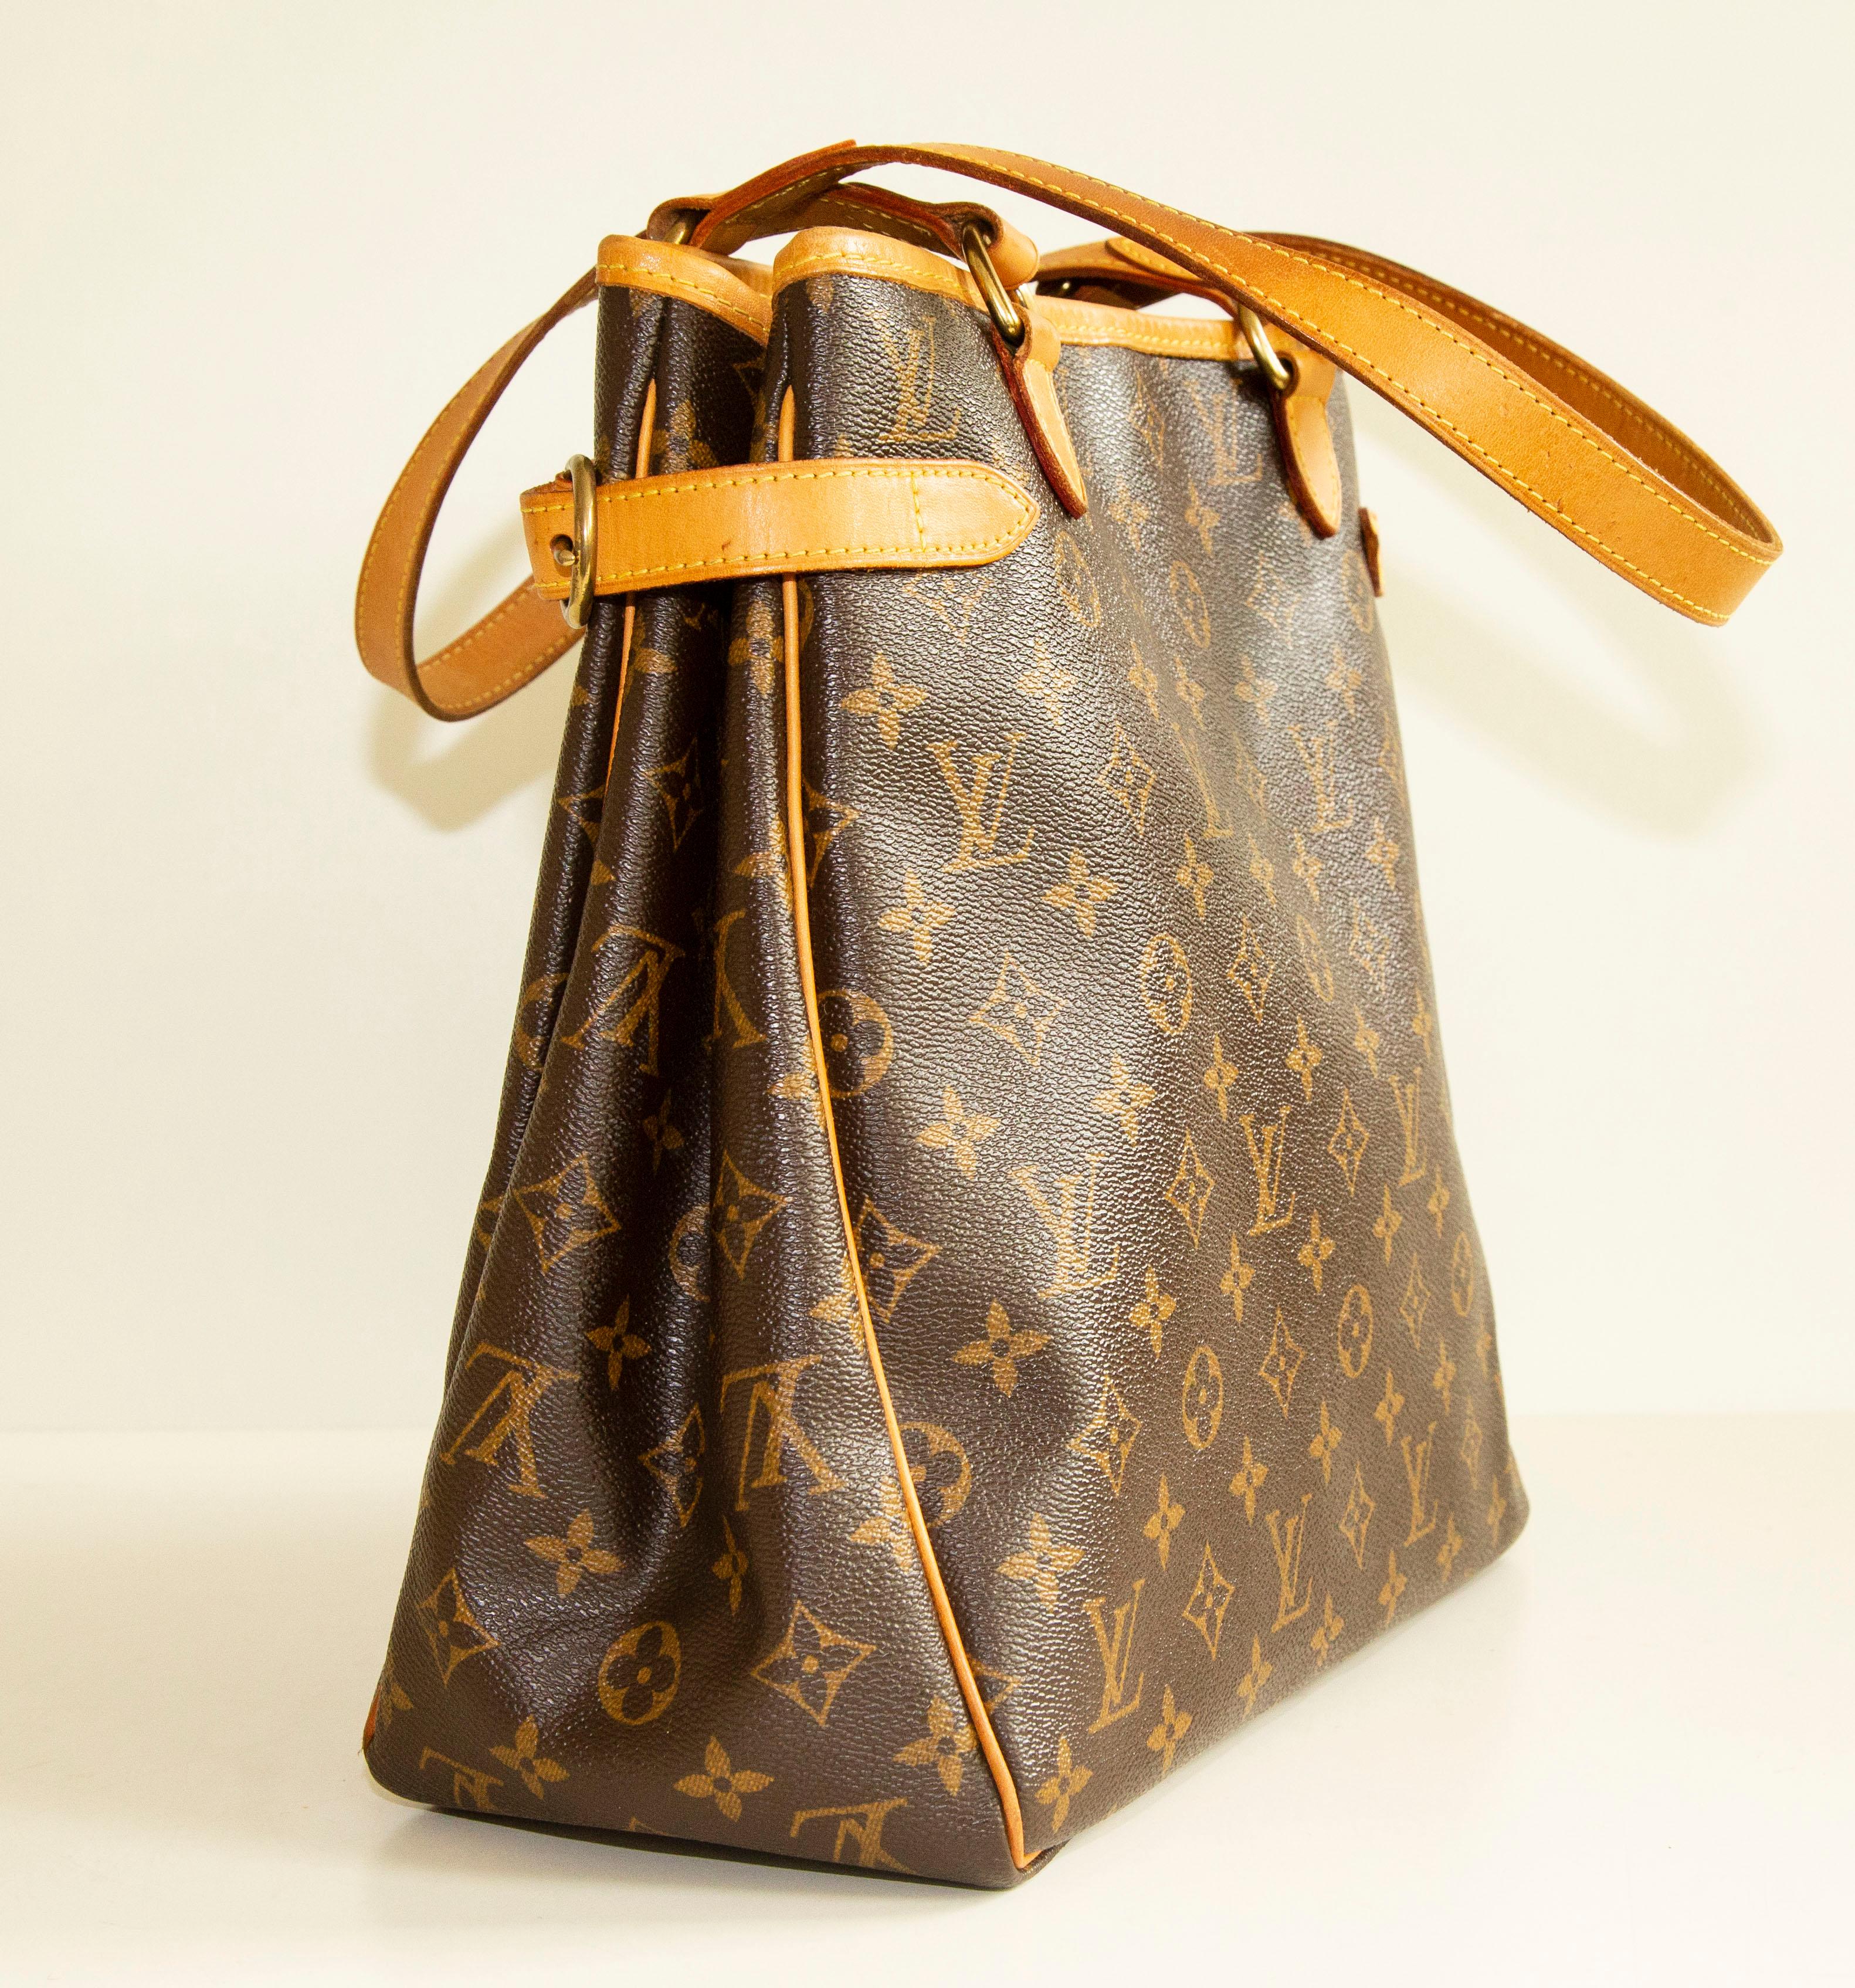 Un authentique sac à bandoulière vertical Louis Vuitton Batignolles. Le sac est orné d'une toile portant le monogramme LV, d'une garniture en cuir Vachetta et de ferrures dorées. L'intérieur est doublé de tissu marron et comporte deux poches